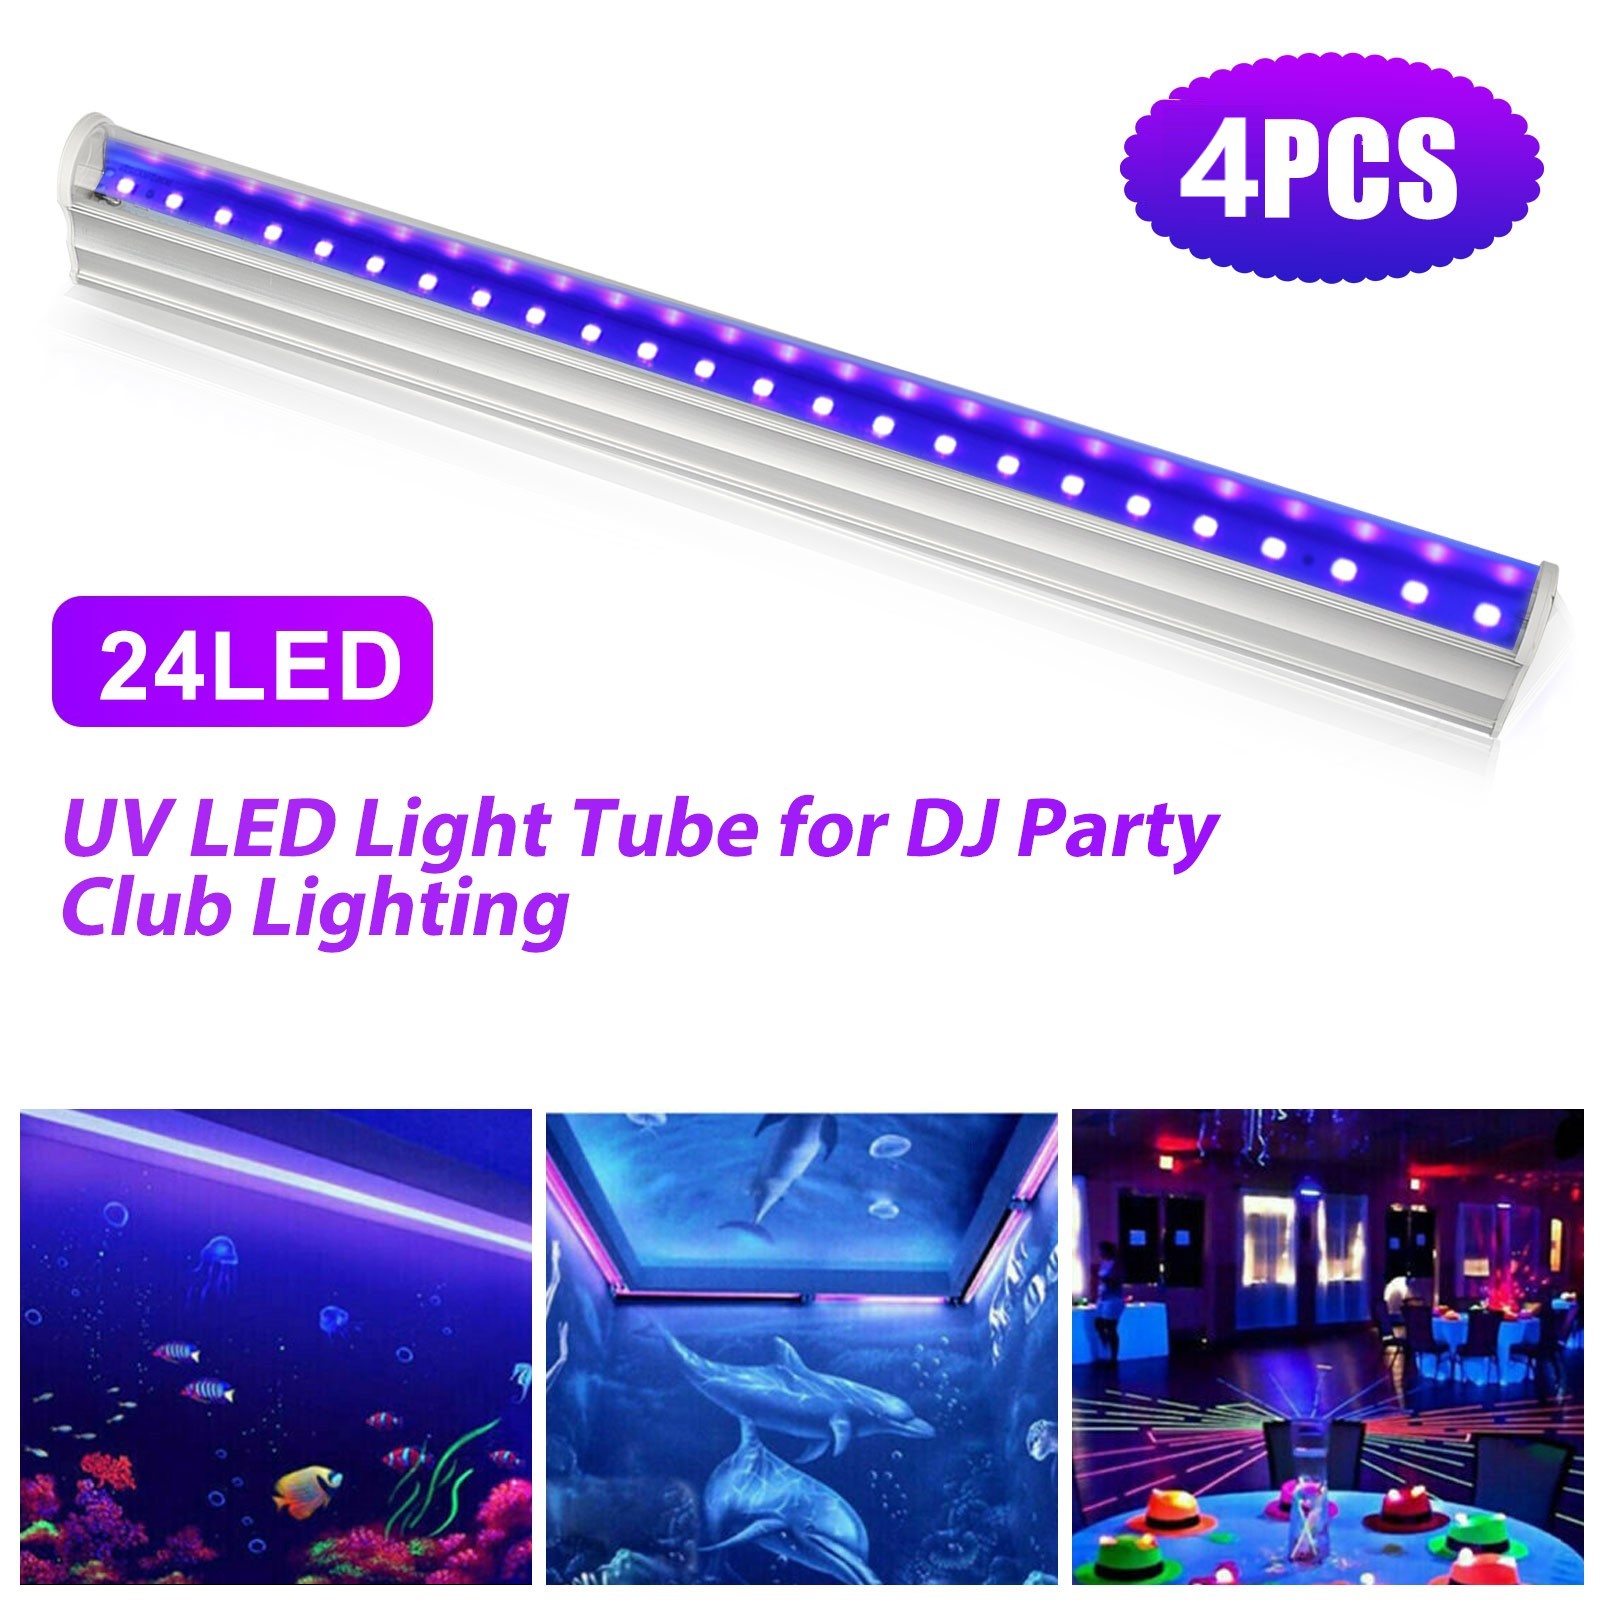 kryds Mauve Stræde 48 LED UV Black Light Bar Fixtures Ultraviolet Blacklight Lamp Strip Party  Club | eBay